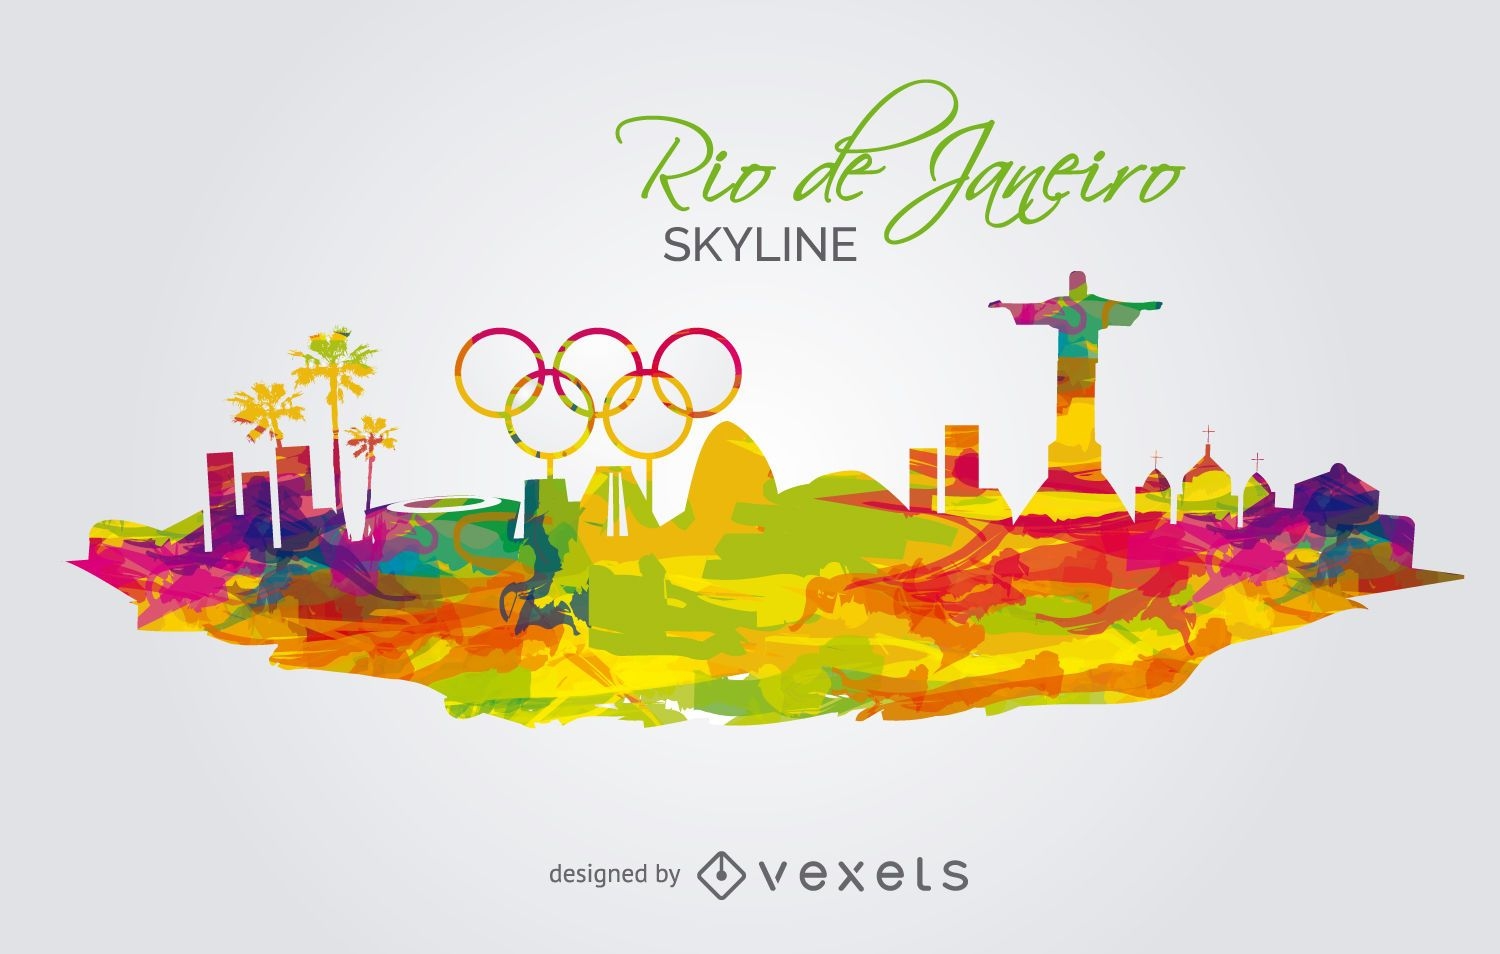 Horizonte de los Juegos Olímpicos de 2016-Río de Janeiro